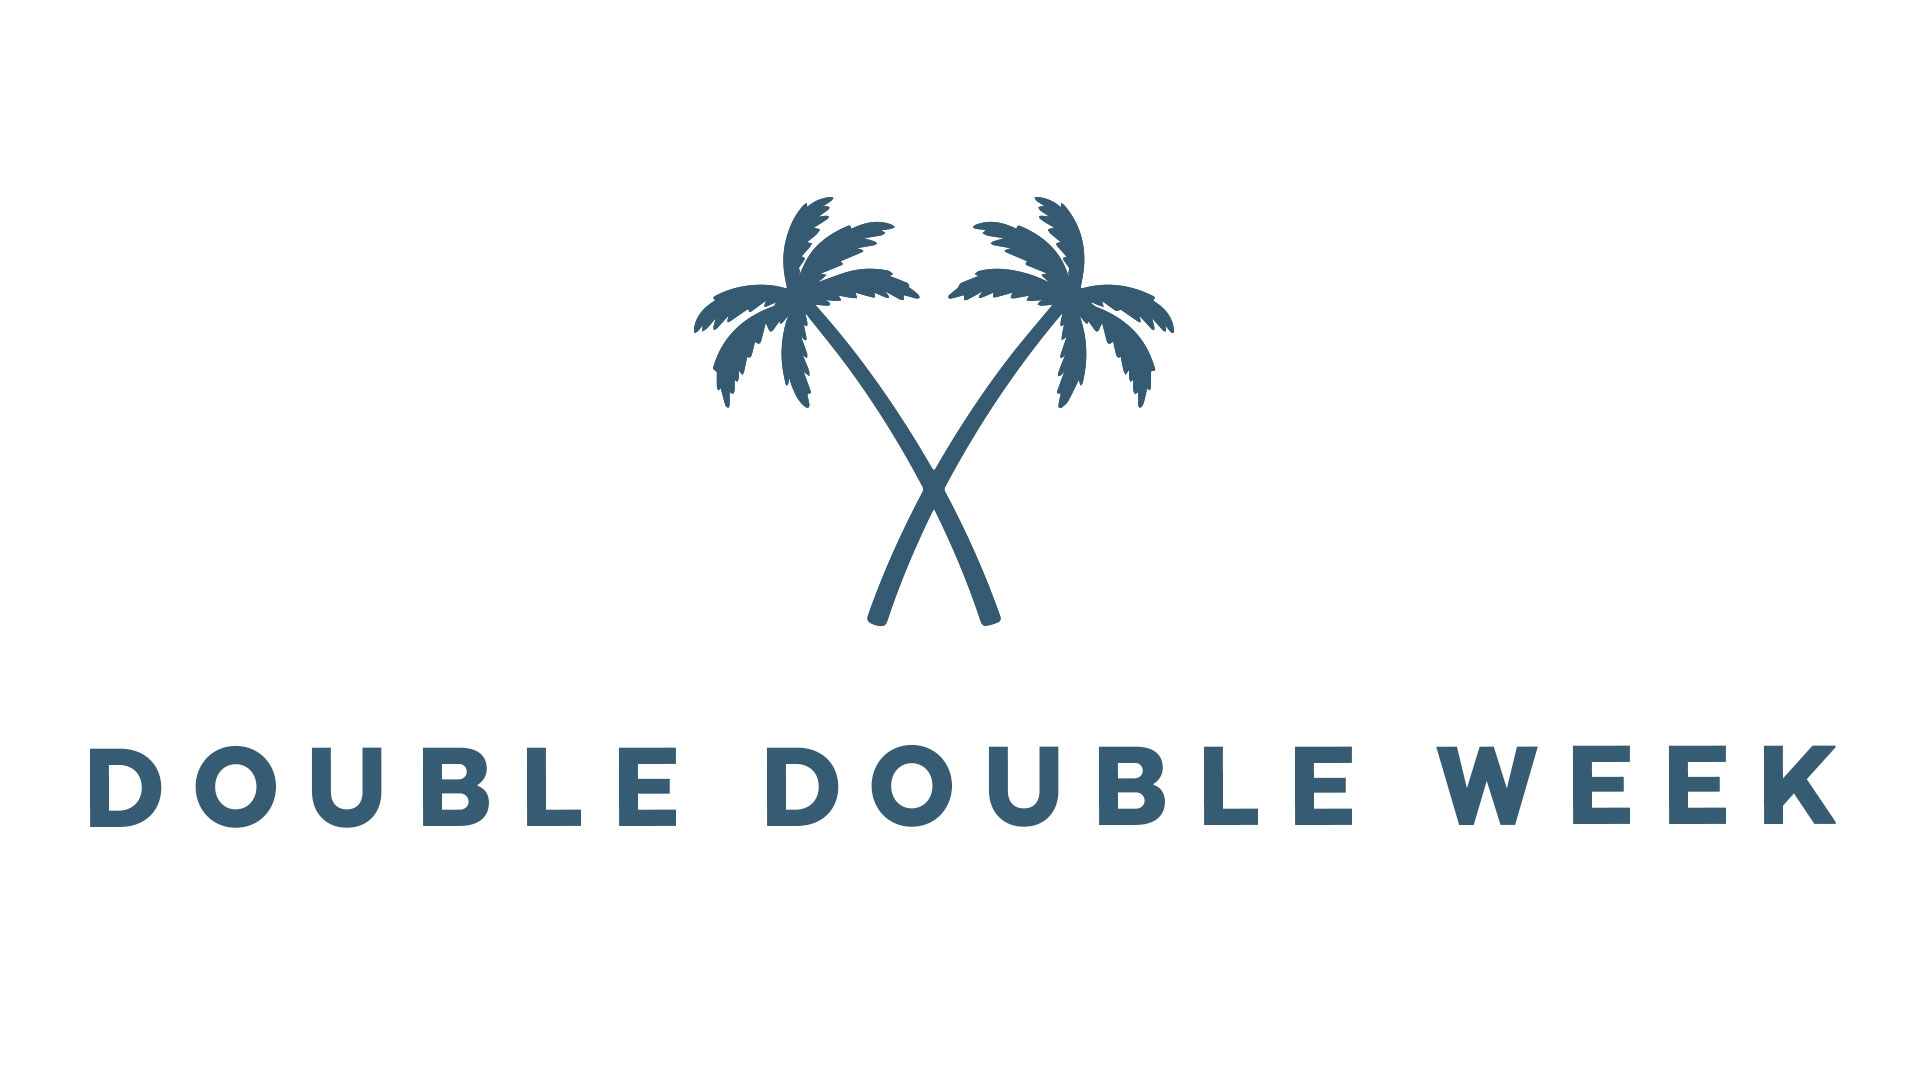 DoubleDoubleWeek